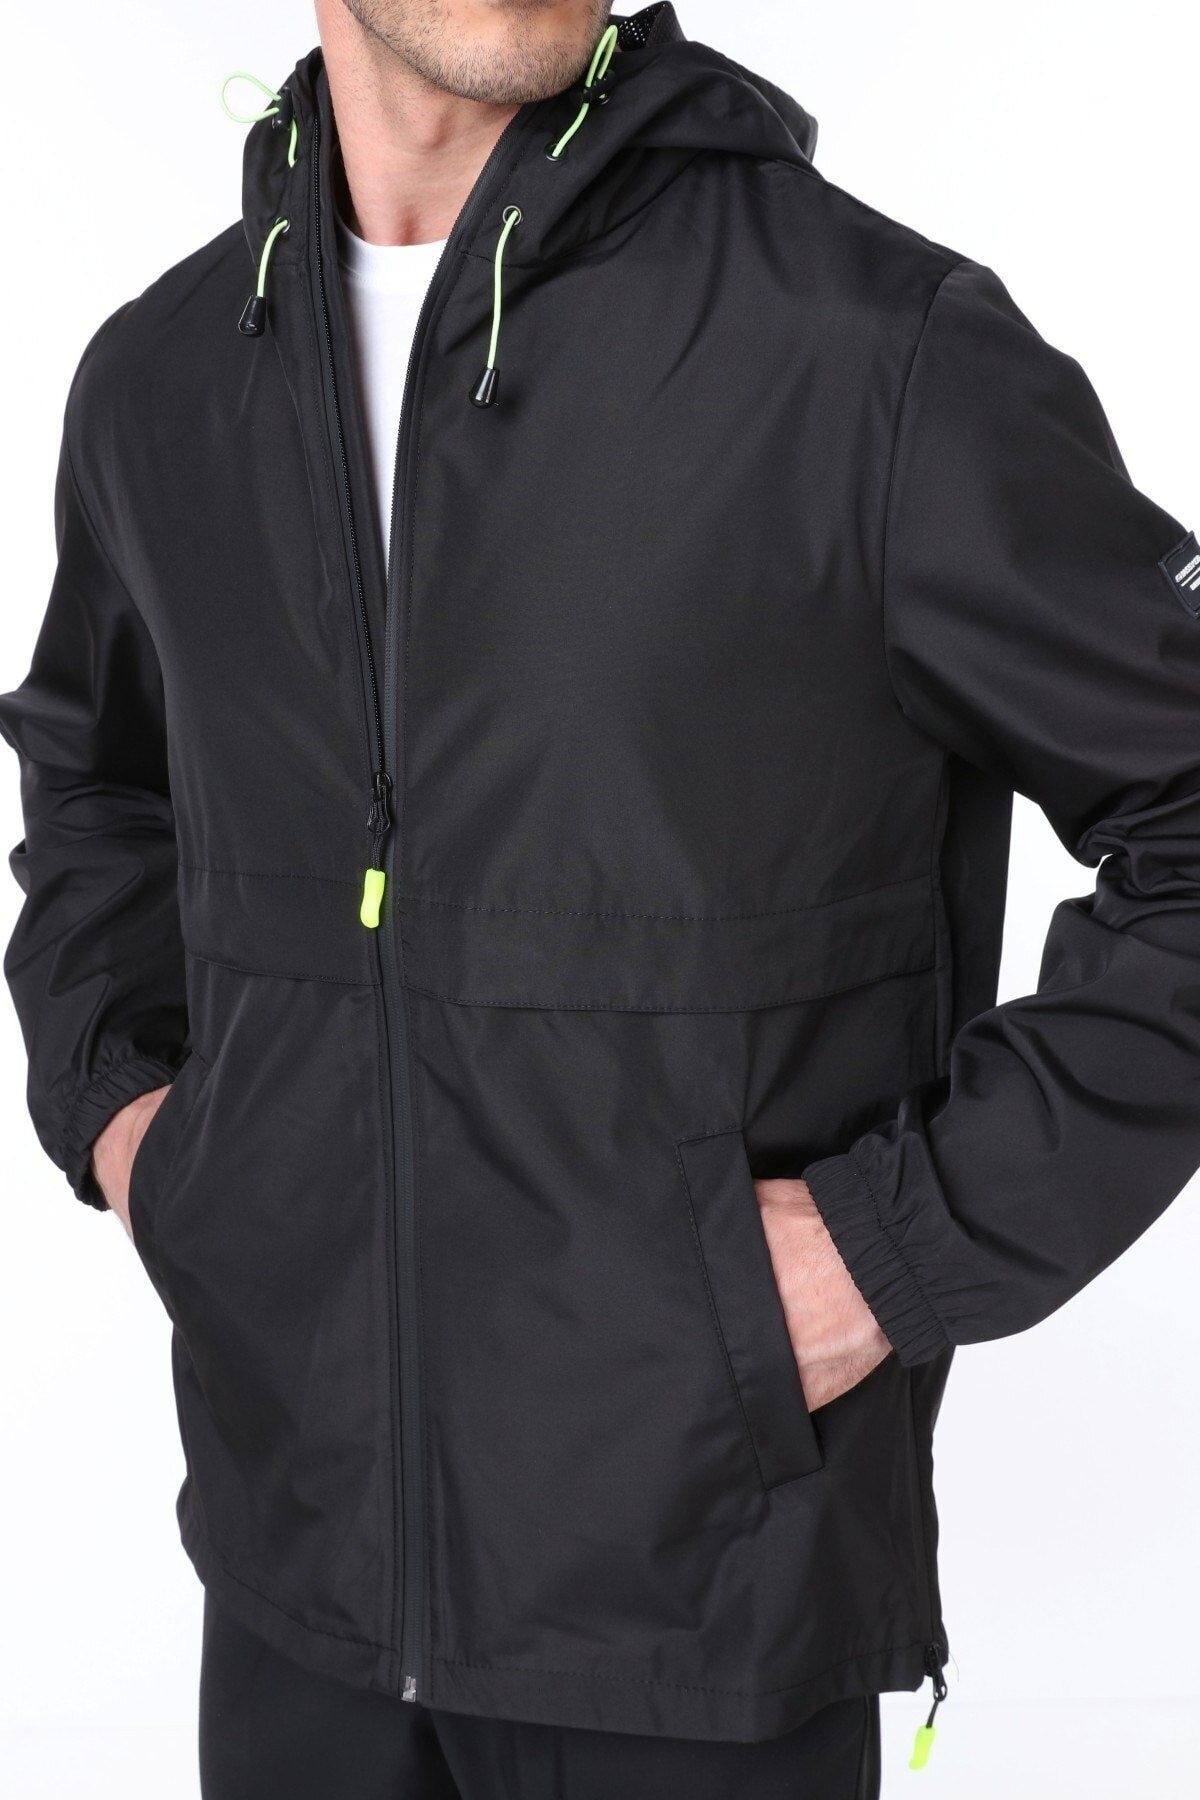 Ghassy Co.Erkek Rüzgarlık/Yağmurluk Outdoor Yırtmaç Detaylı Mevsimlik Taş Spor Ceket - SİYAH